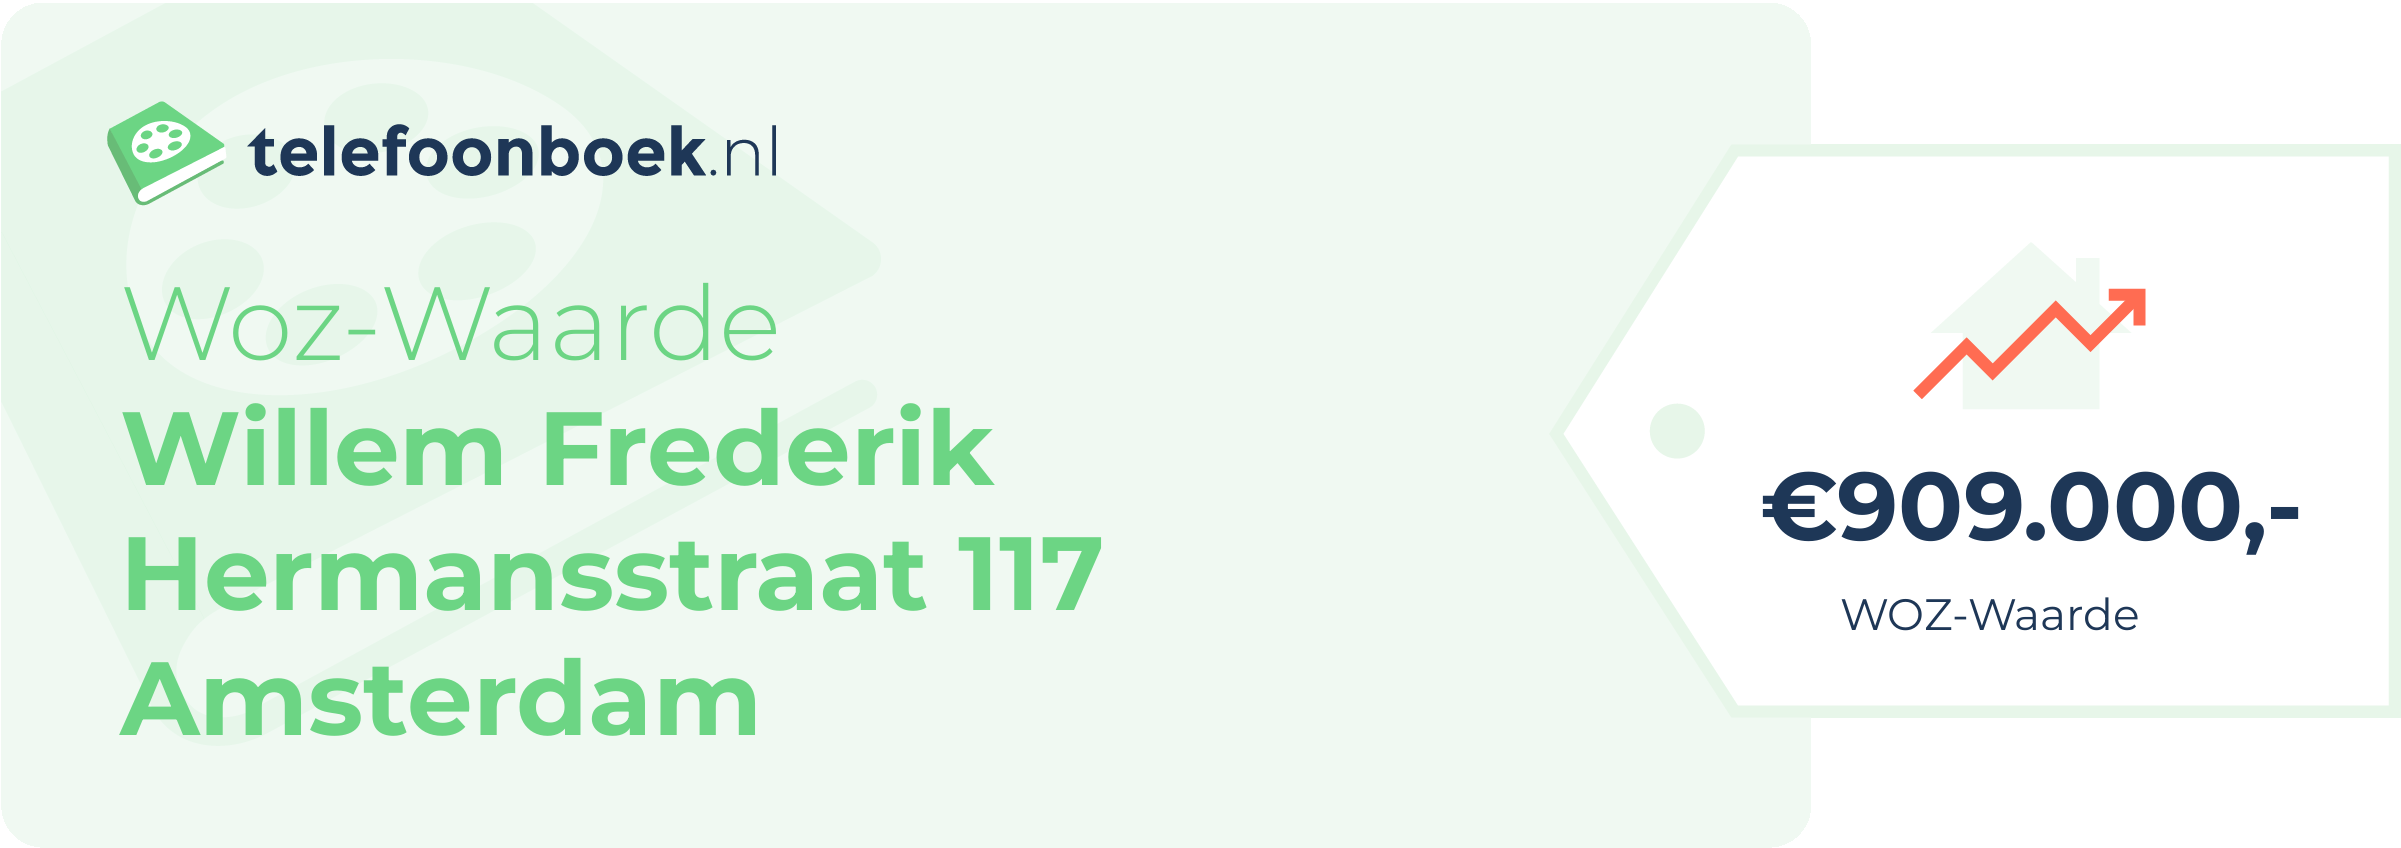 WOZ-waarde Willem Frederik Hermansstraat 117 Amsterdam